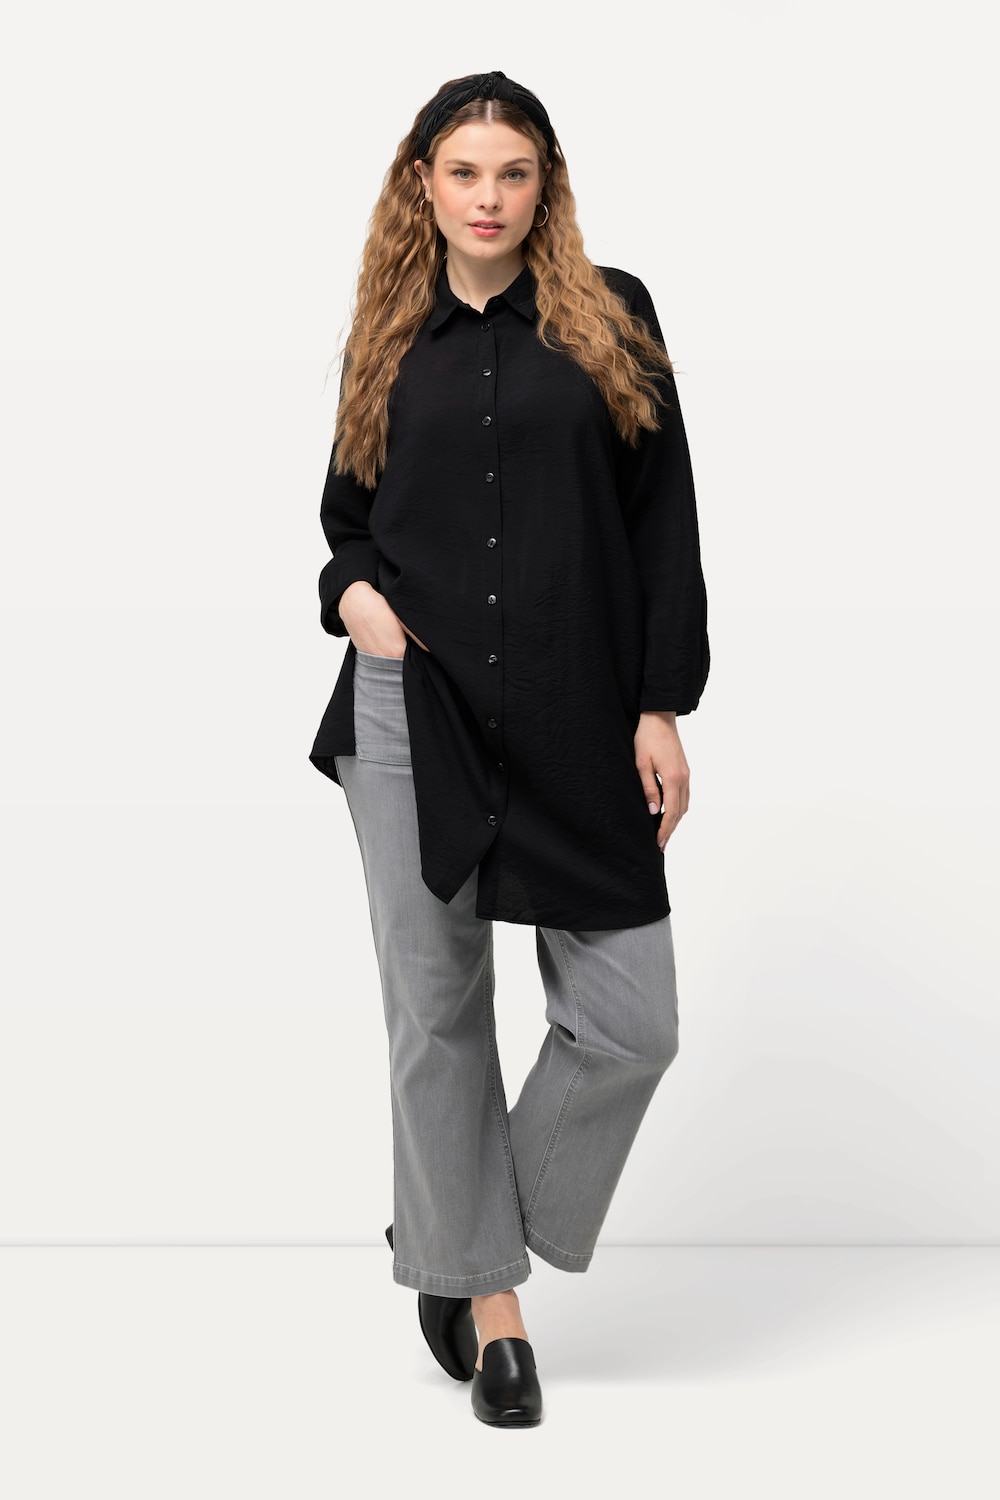 Grote Maten Lange blouse, Dames, zwart, Maat: 42/44, Viscose/Synthetische vezels, Ulla Popken